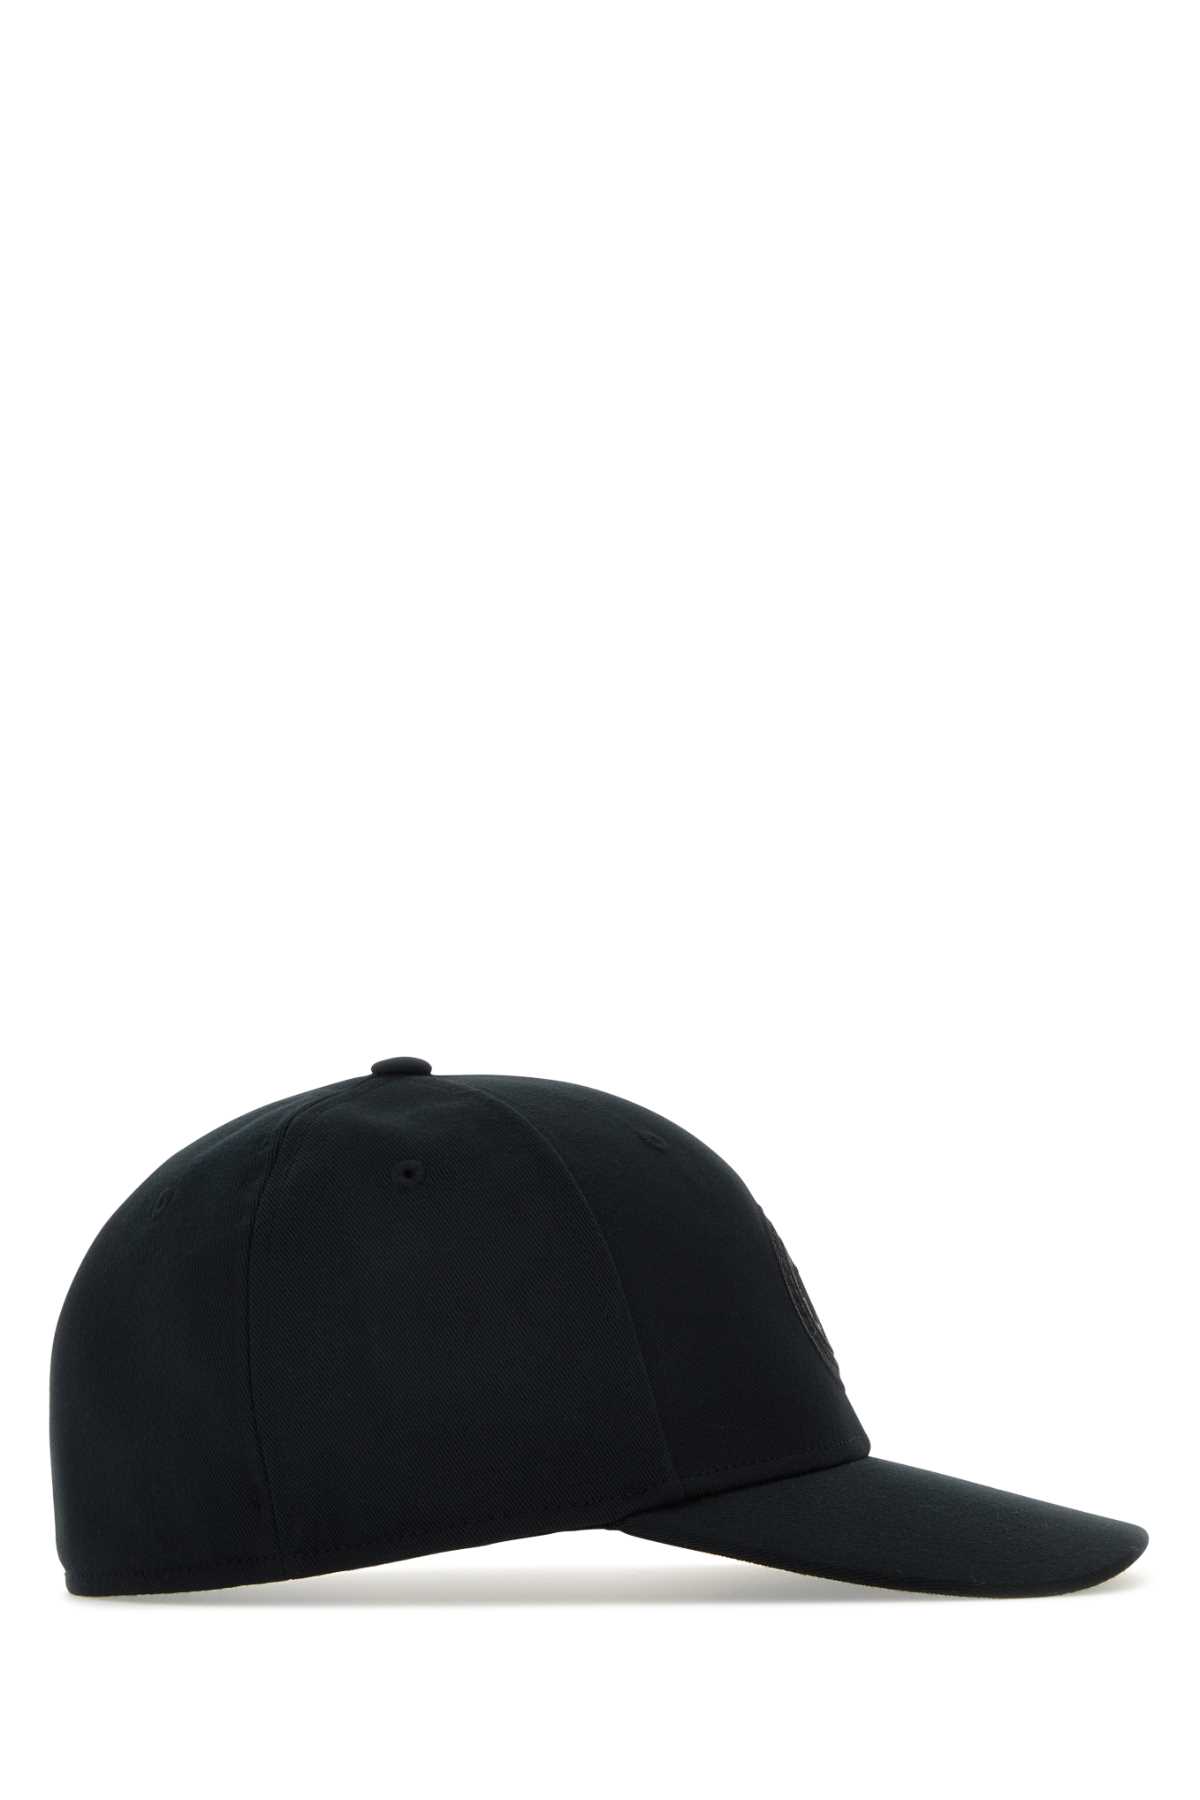 Shop Canada Goose Black Polyester Tonal Baseball Cap